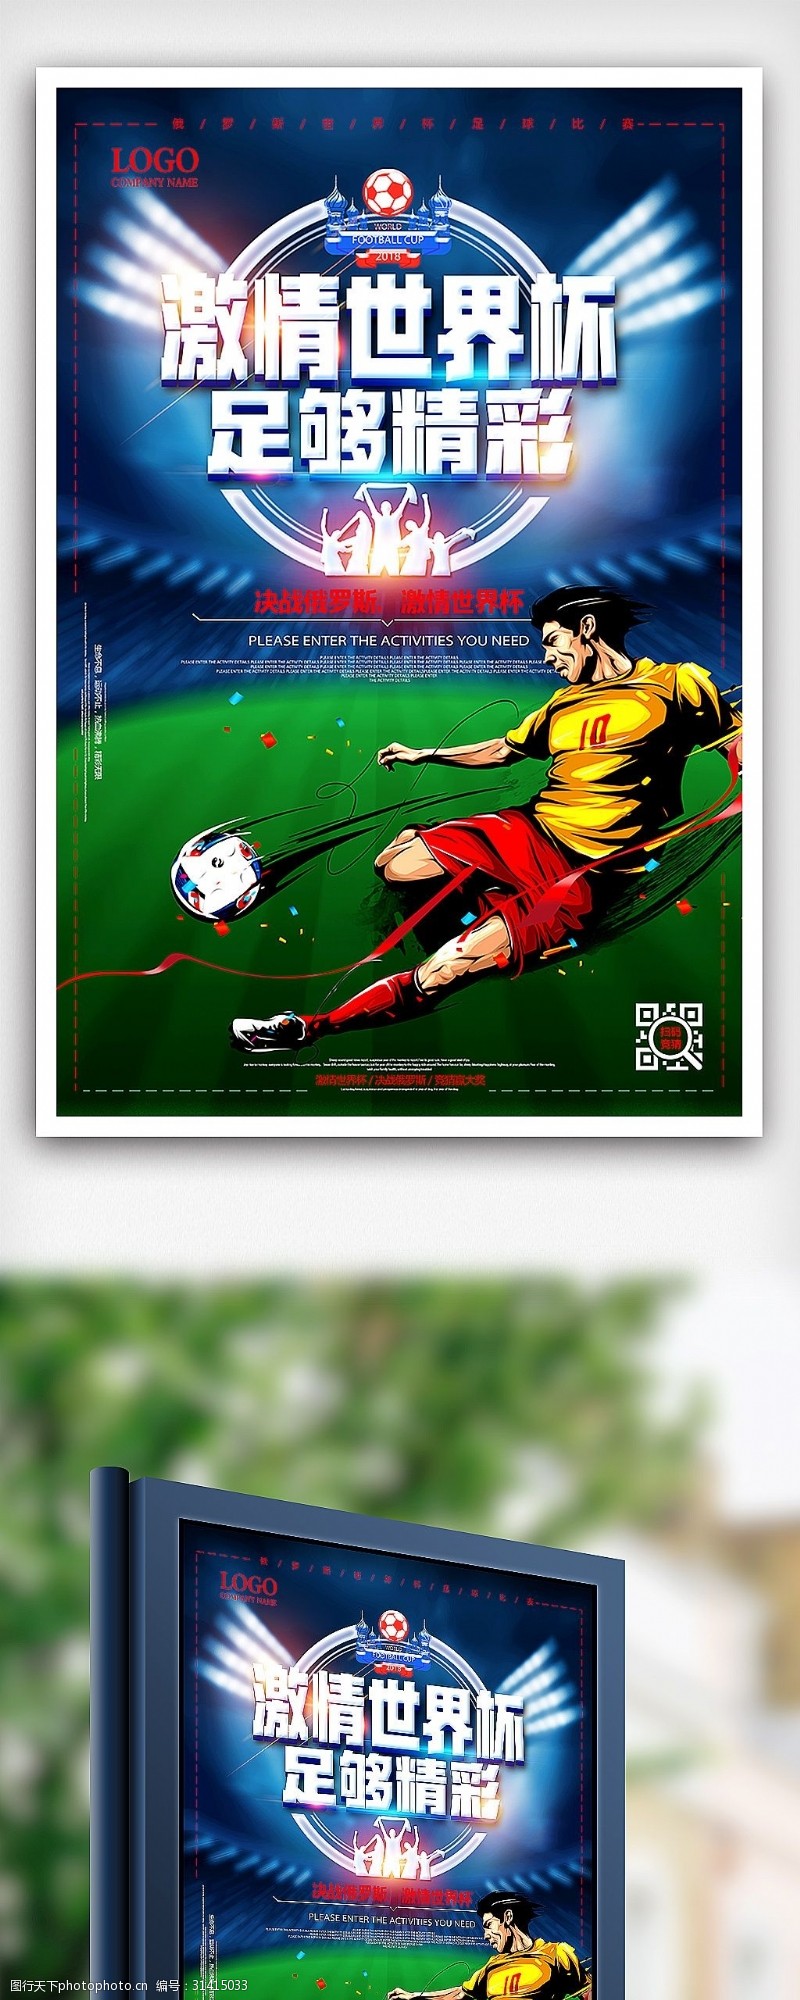 足球图片素材下载2018俄罗斯世界杯激情足球赛体育海报